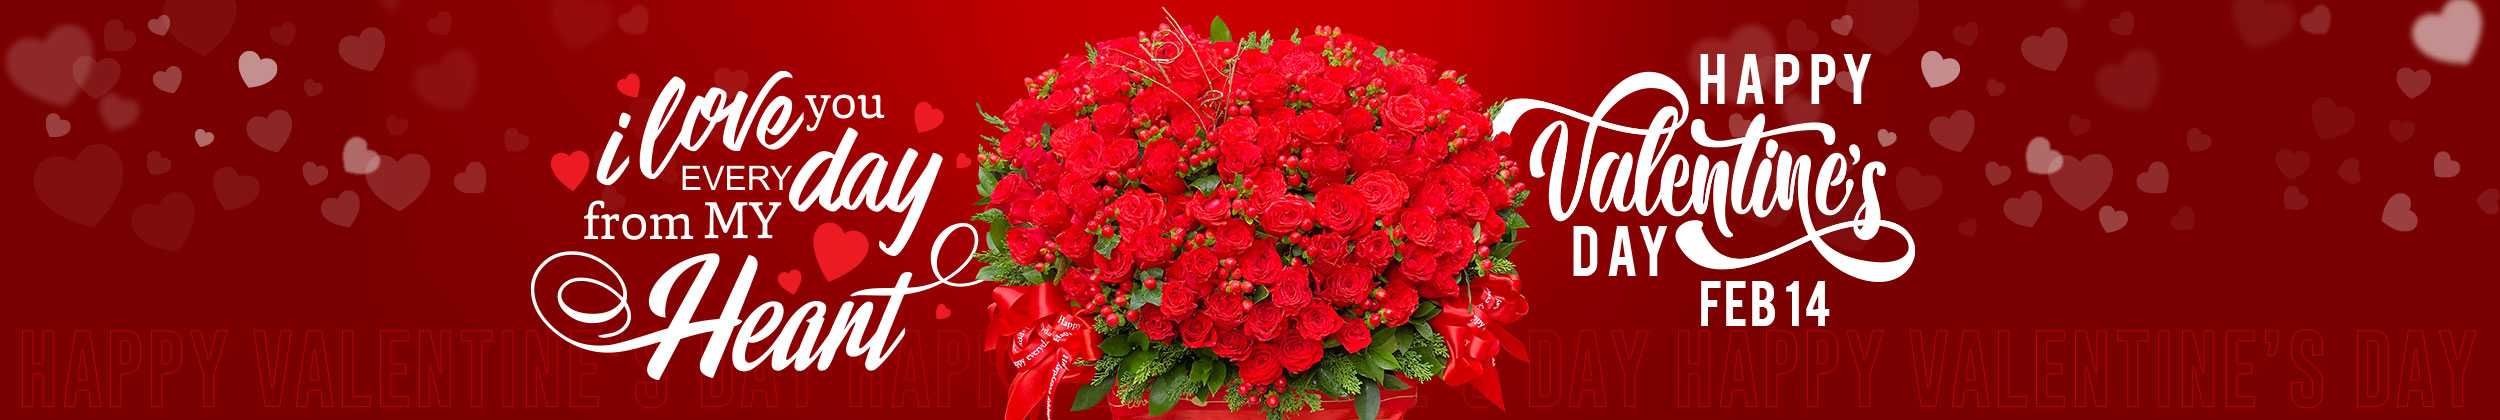 valentines day vietnam saigonflowers page slider